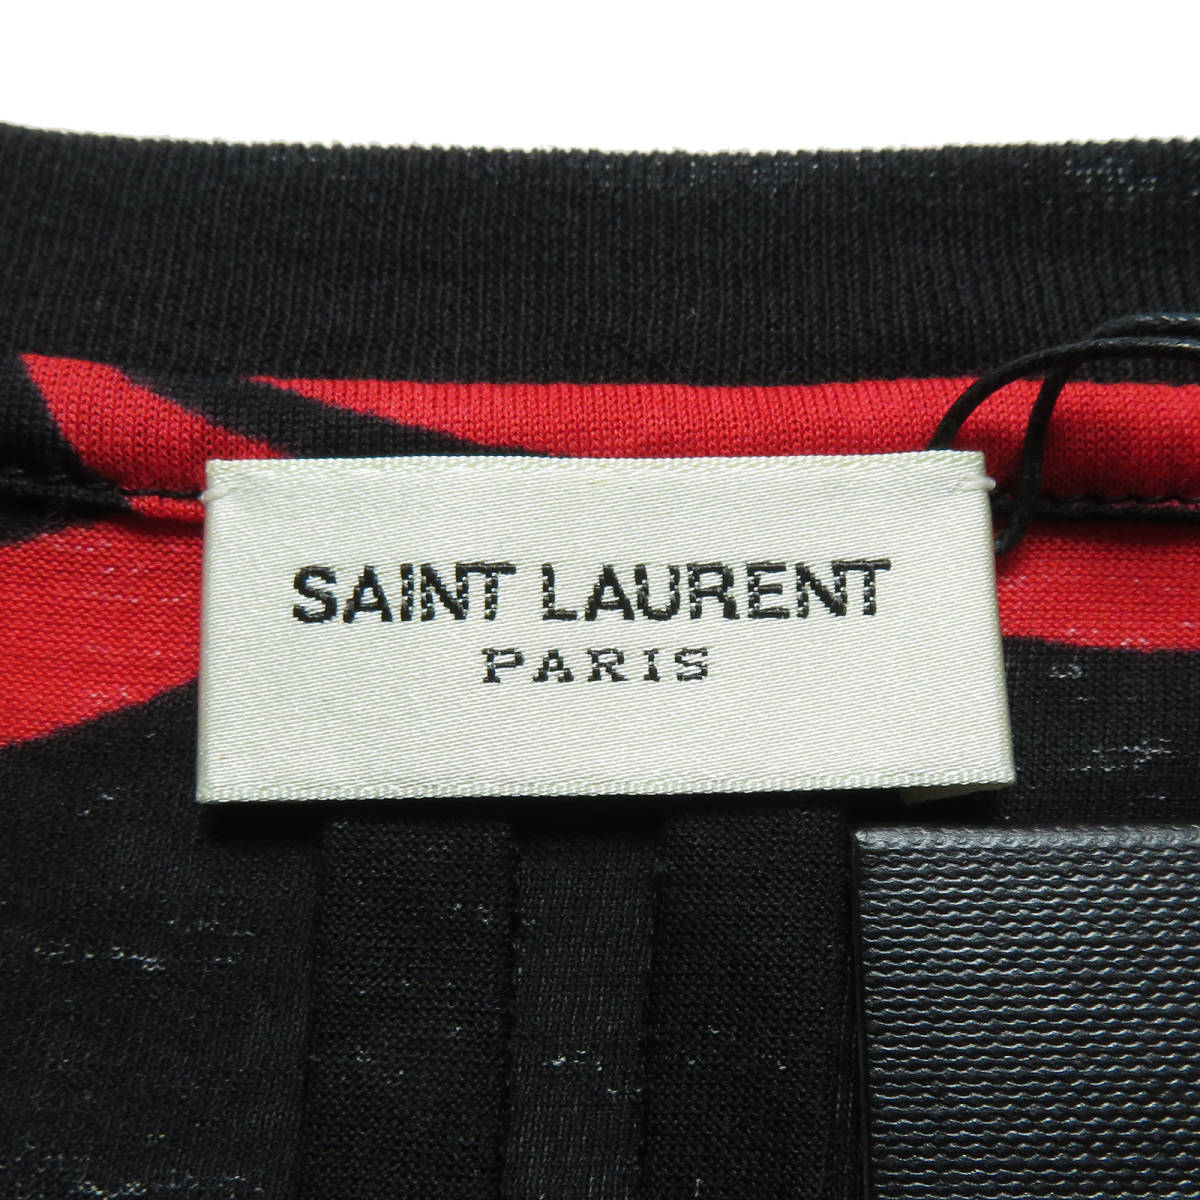  не использовался хранение товар SAINT LAURENT PARIS солнечный rolan Париж "губа" принт футболка общий рисунок черный красный 2016 год 440730